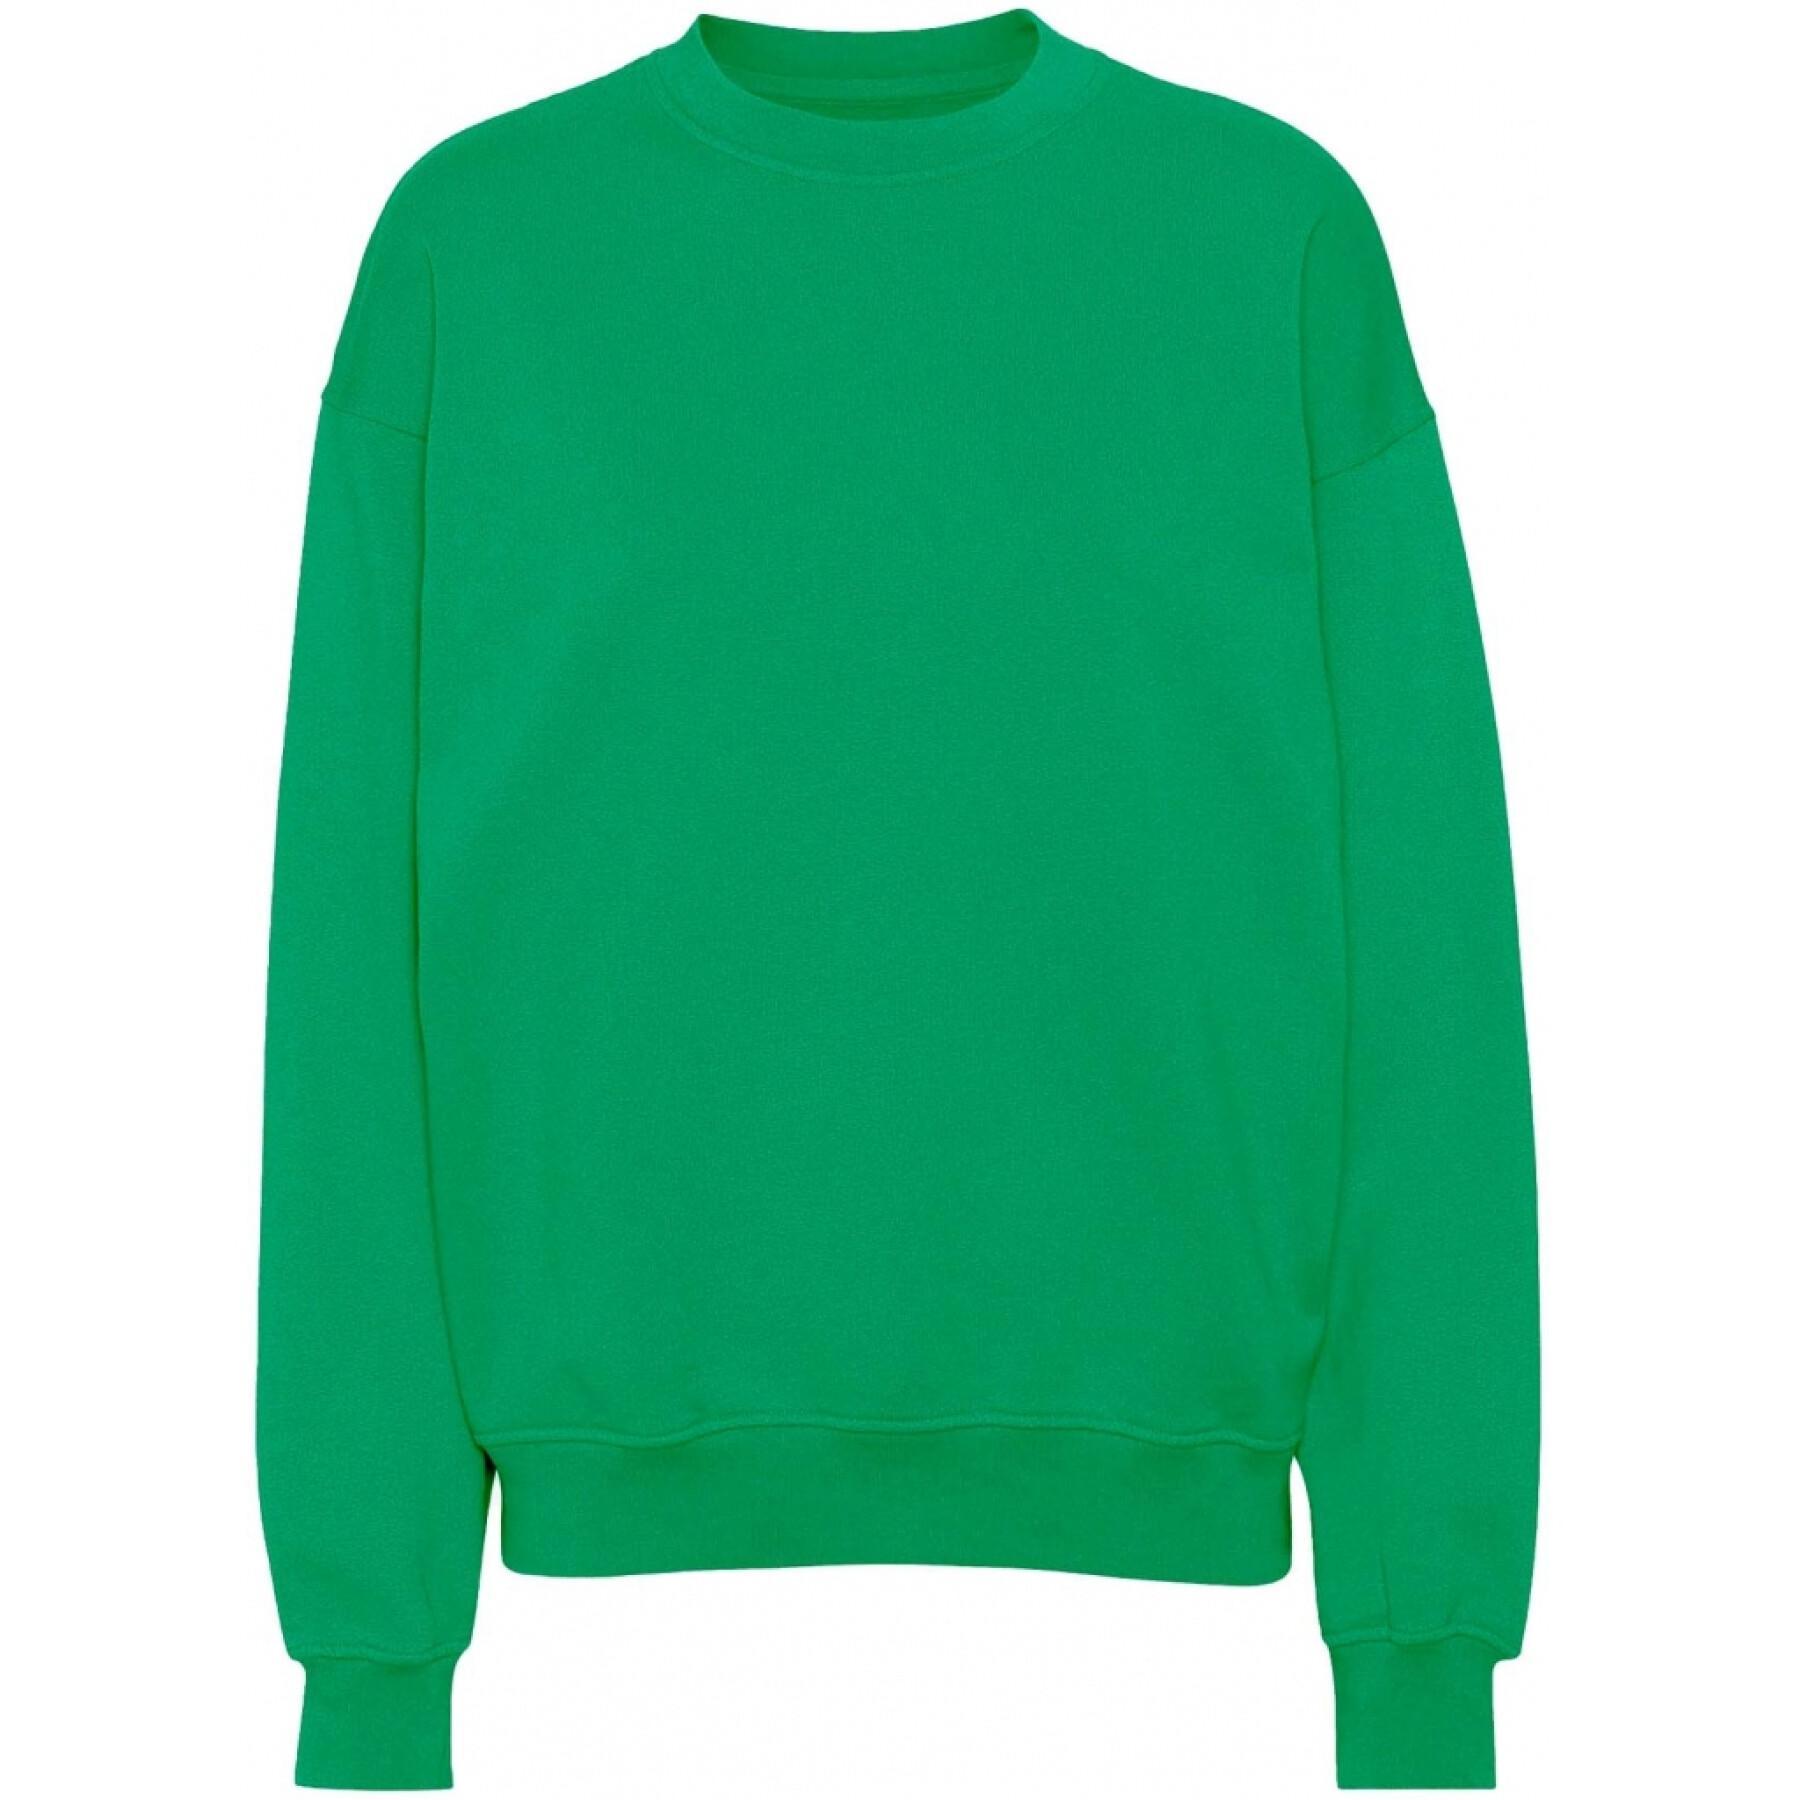 Sweatshirt mit Rundhalsausschnitt Colorful Standard Organic oversized kelly green